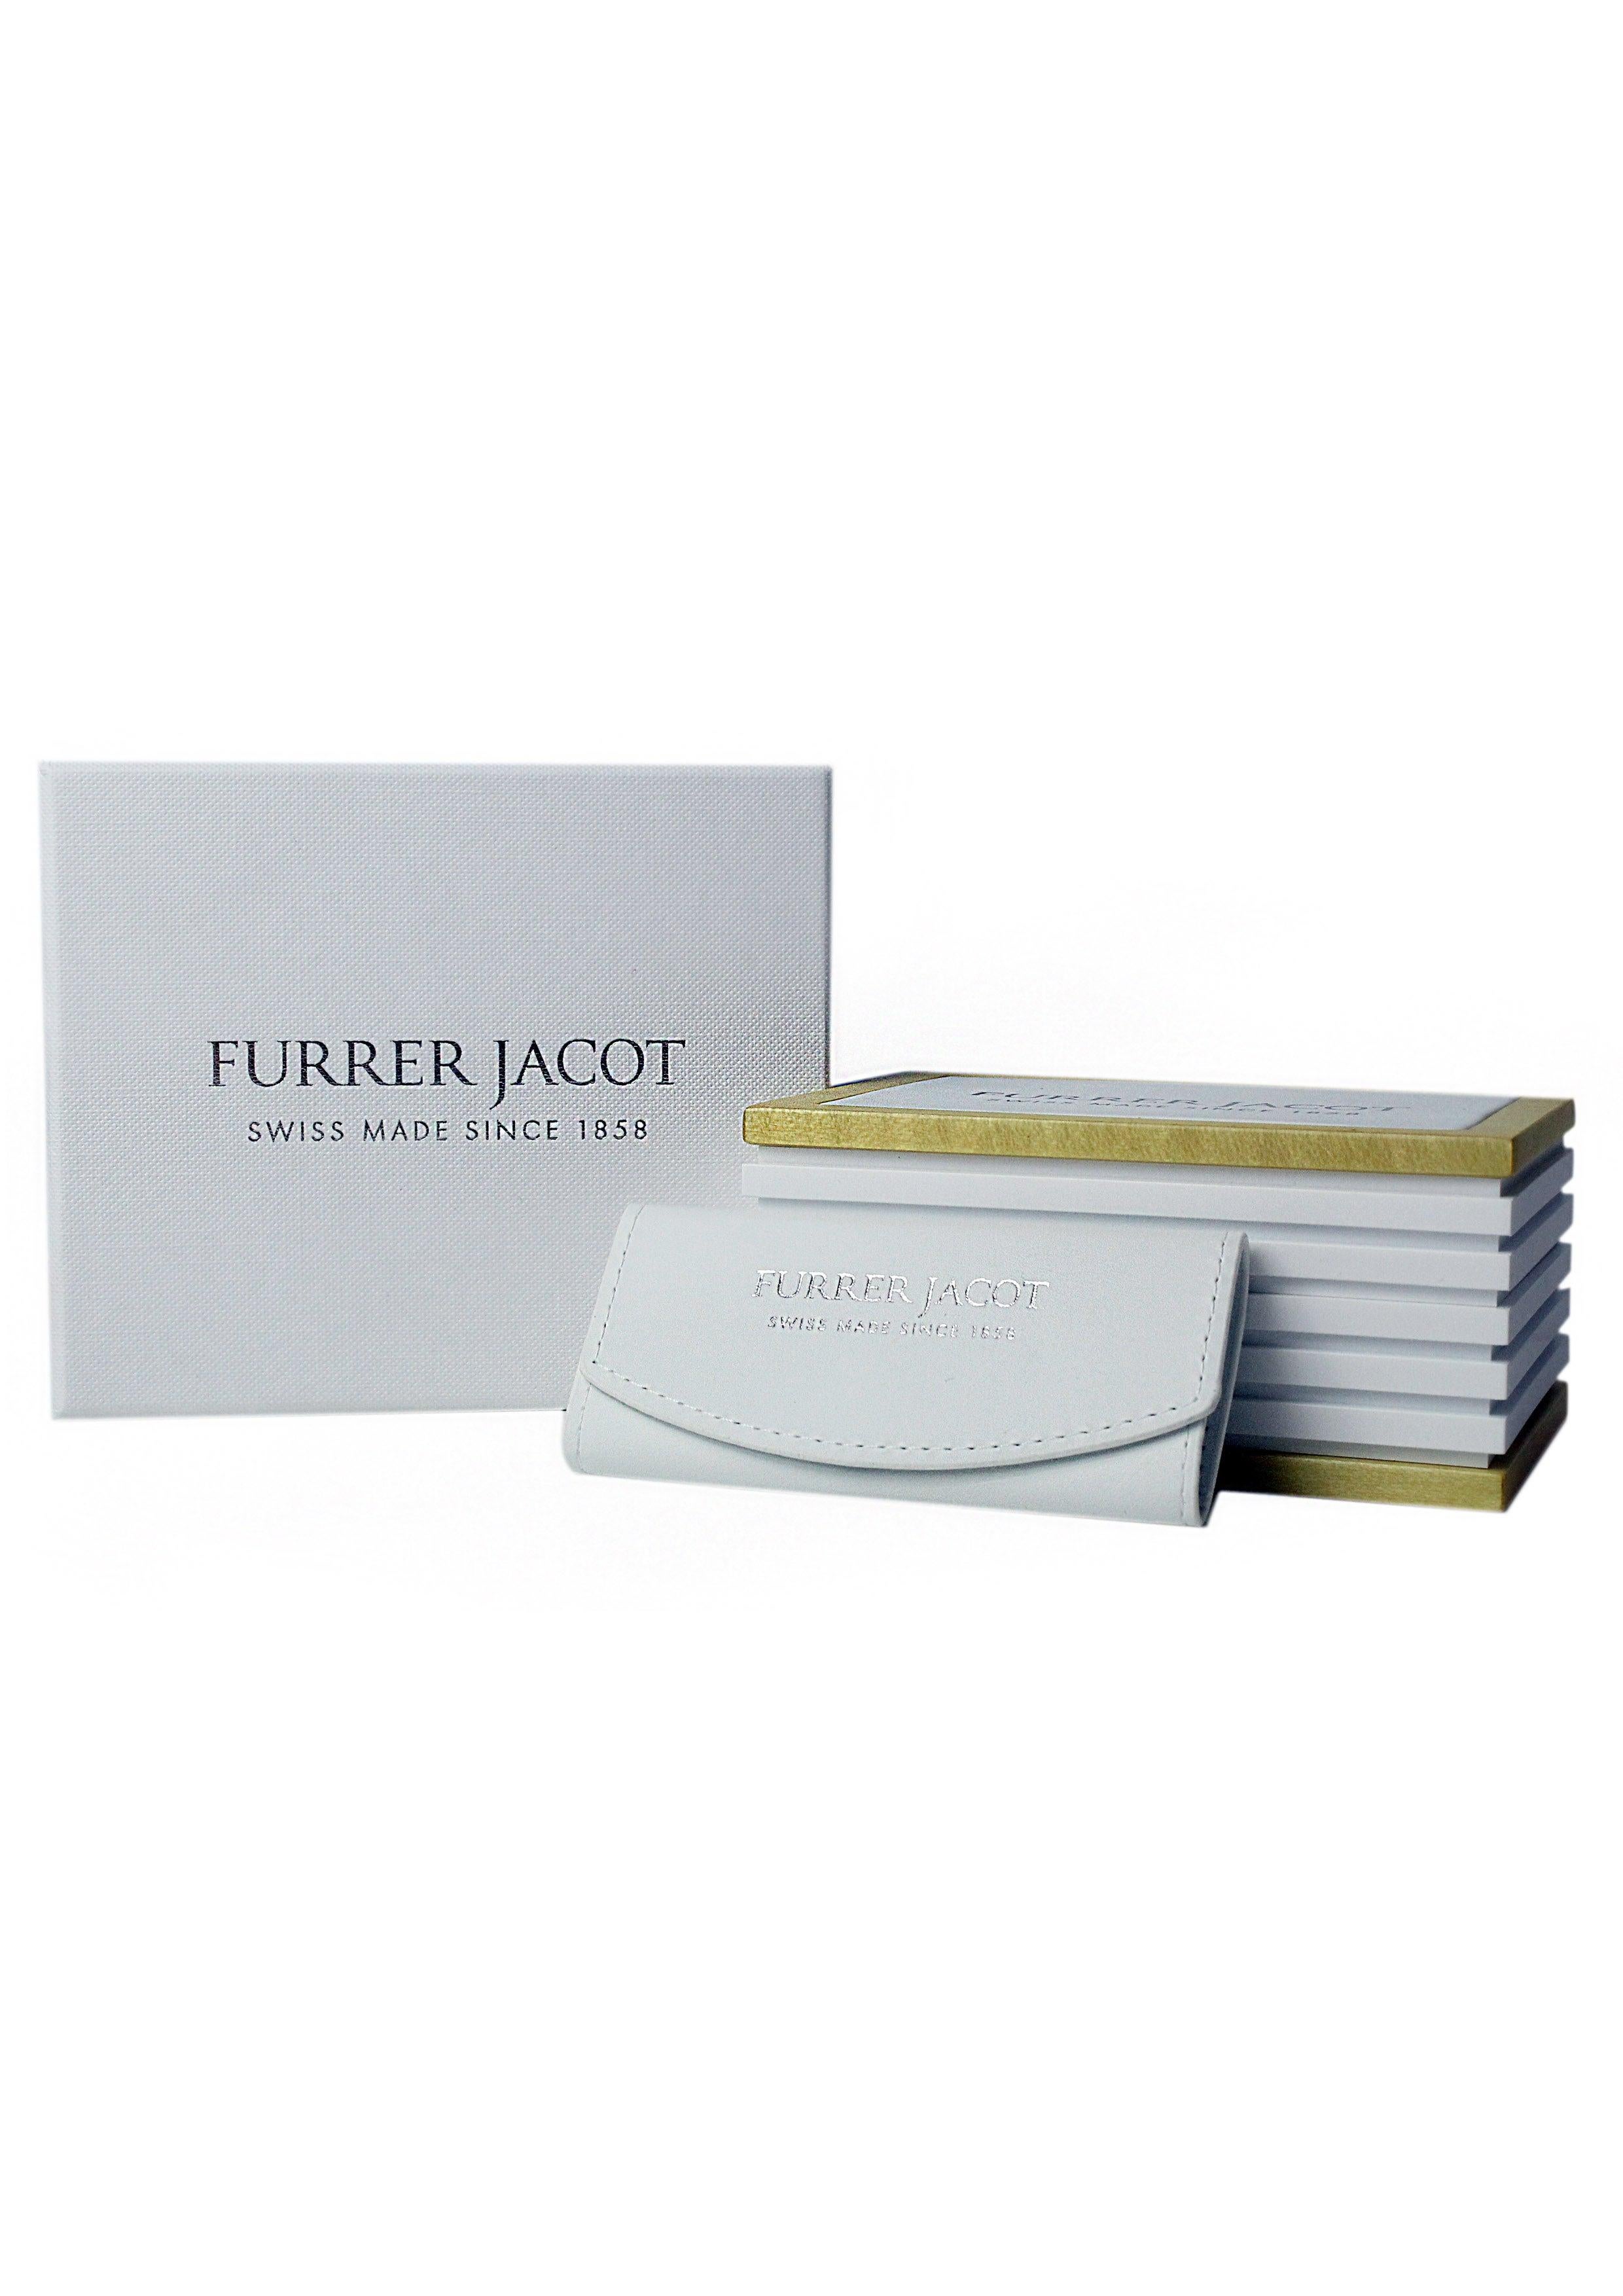 For Sale:  Furrer Jacot 18 Karat White Gold Men's Wedding Band 5